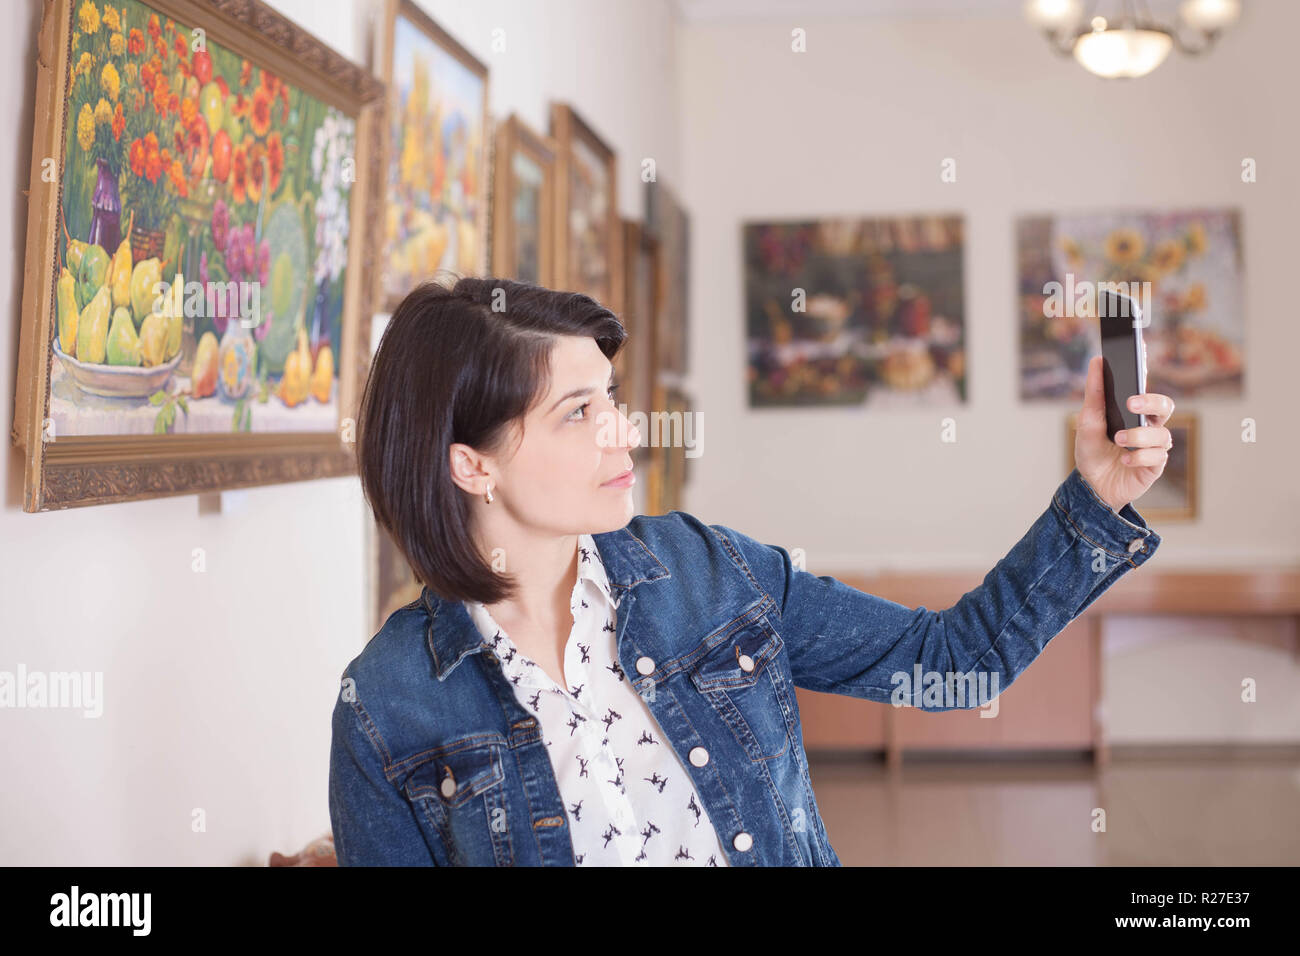 Porträt einer jungen Frau mit einem selfie in einer Galerie oder einem Museum. Stockfoto